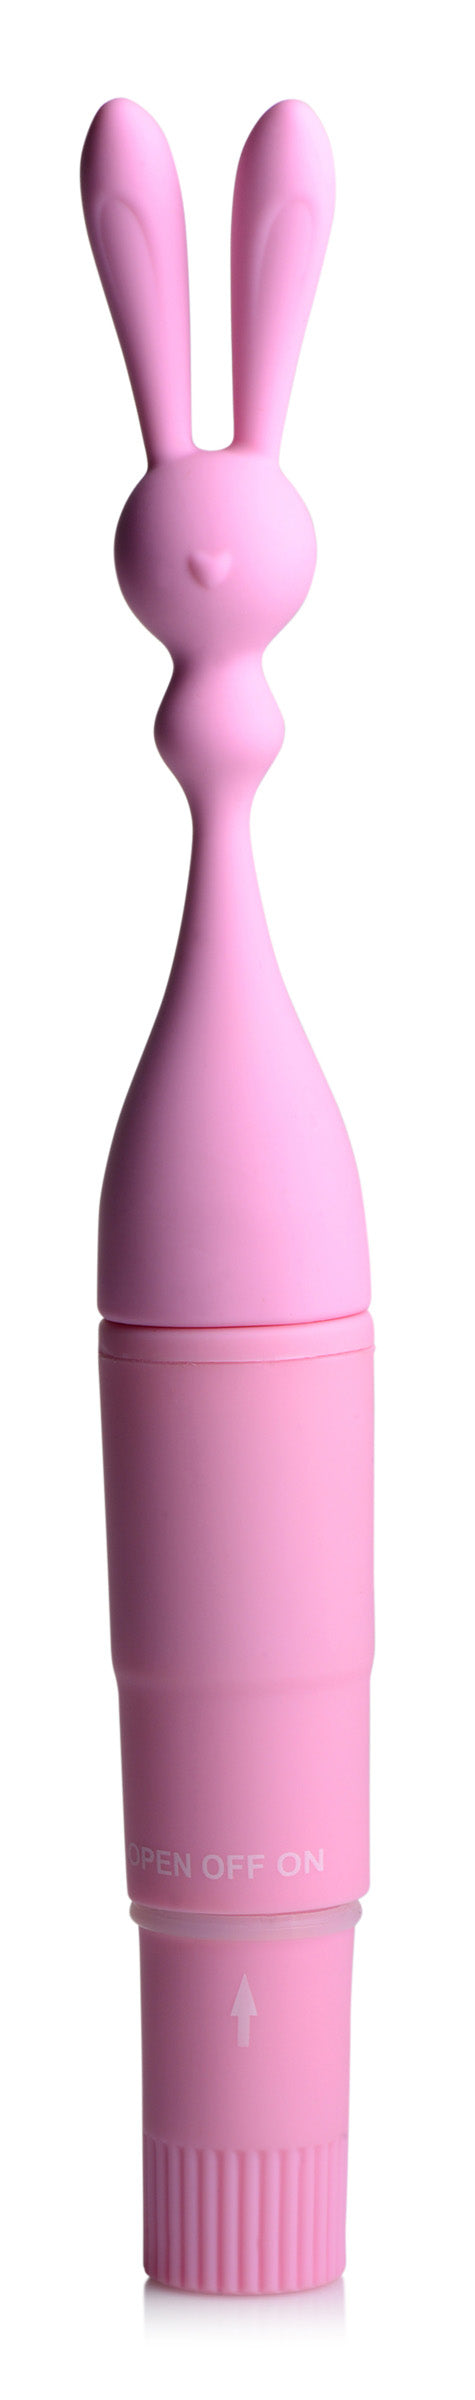 Bunny Rocket  Silicone Vibrator - UABDSM